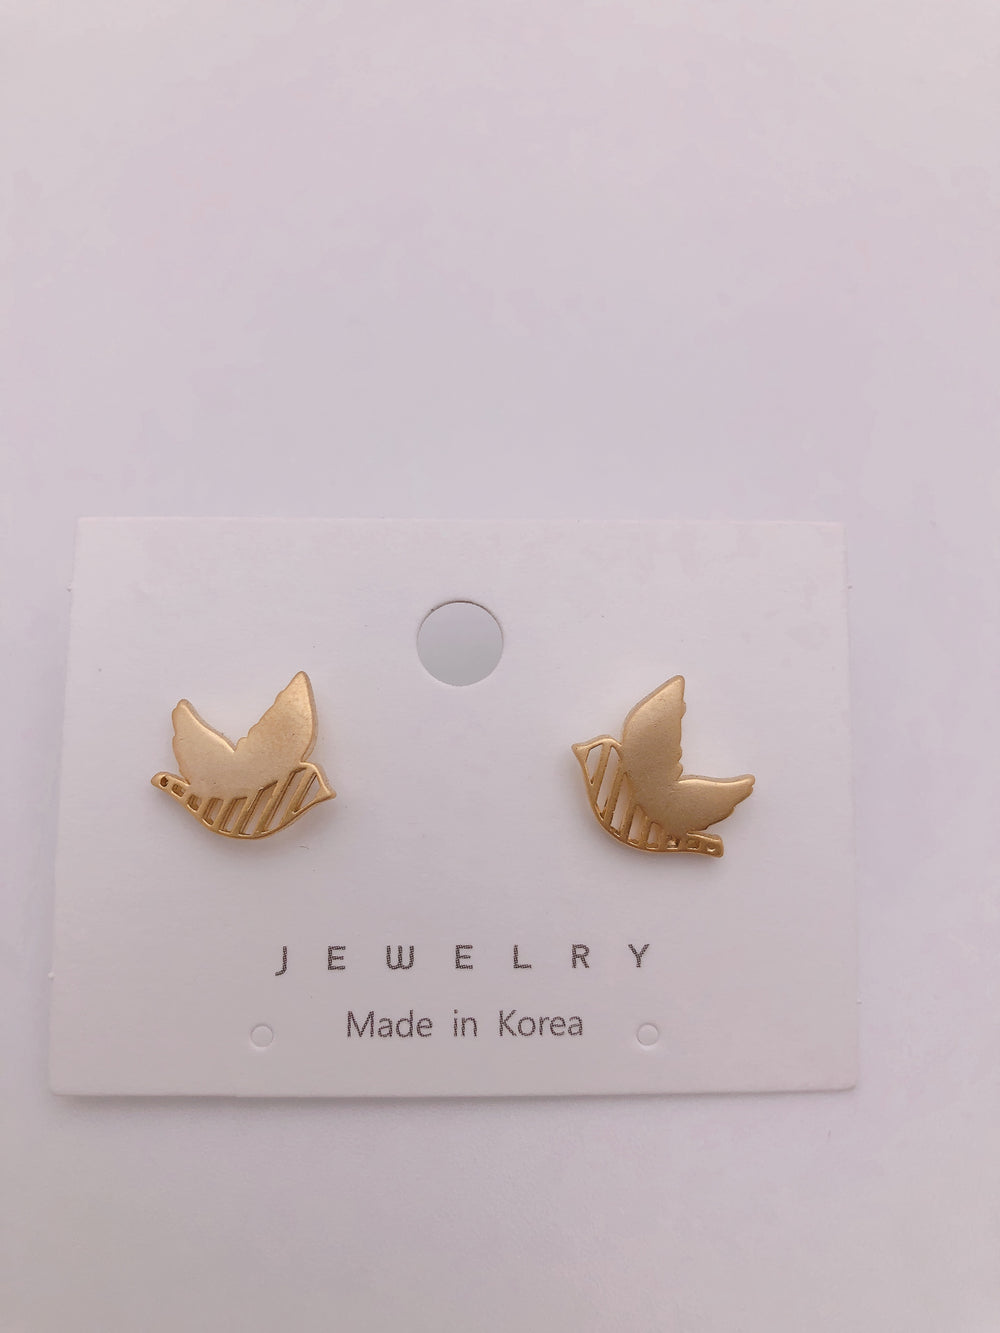 Pigeon earrings